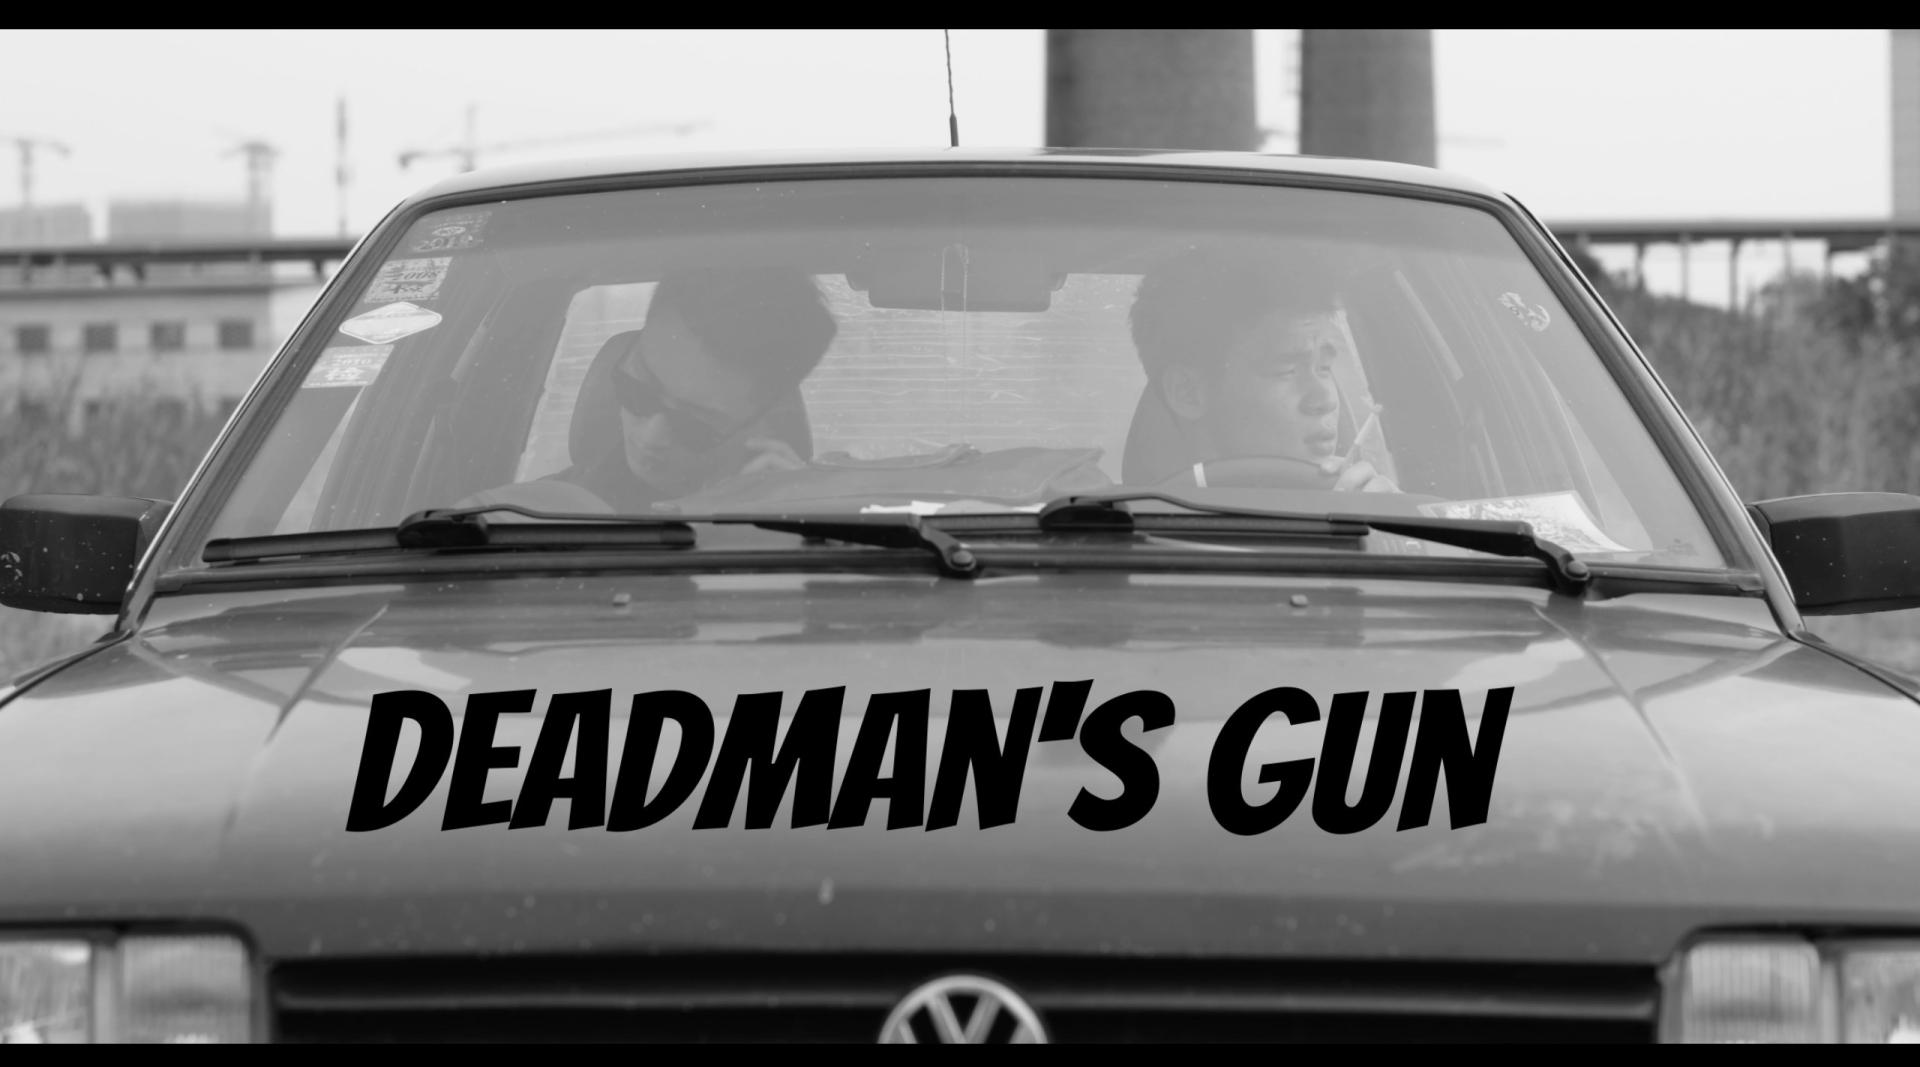 Deadman's gun